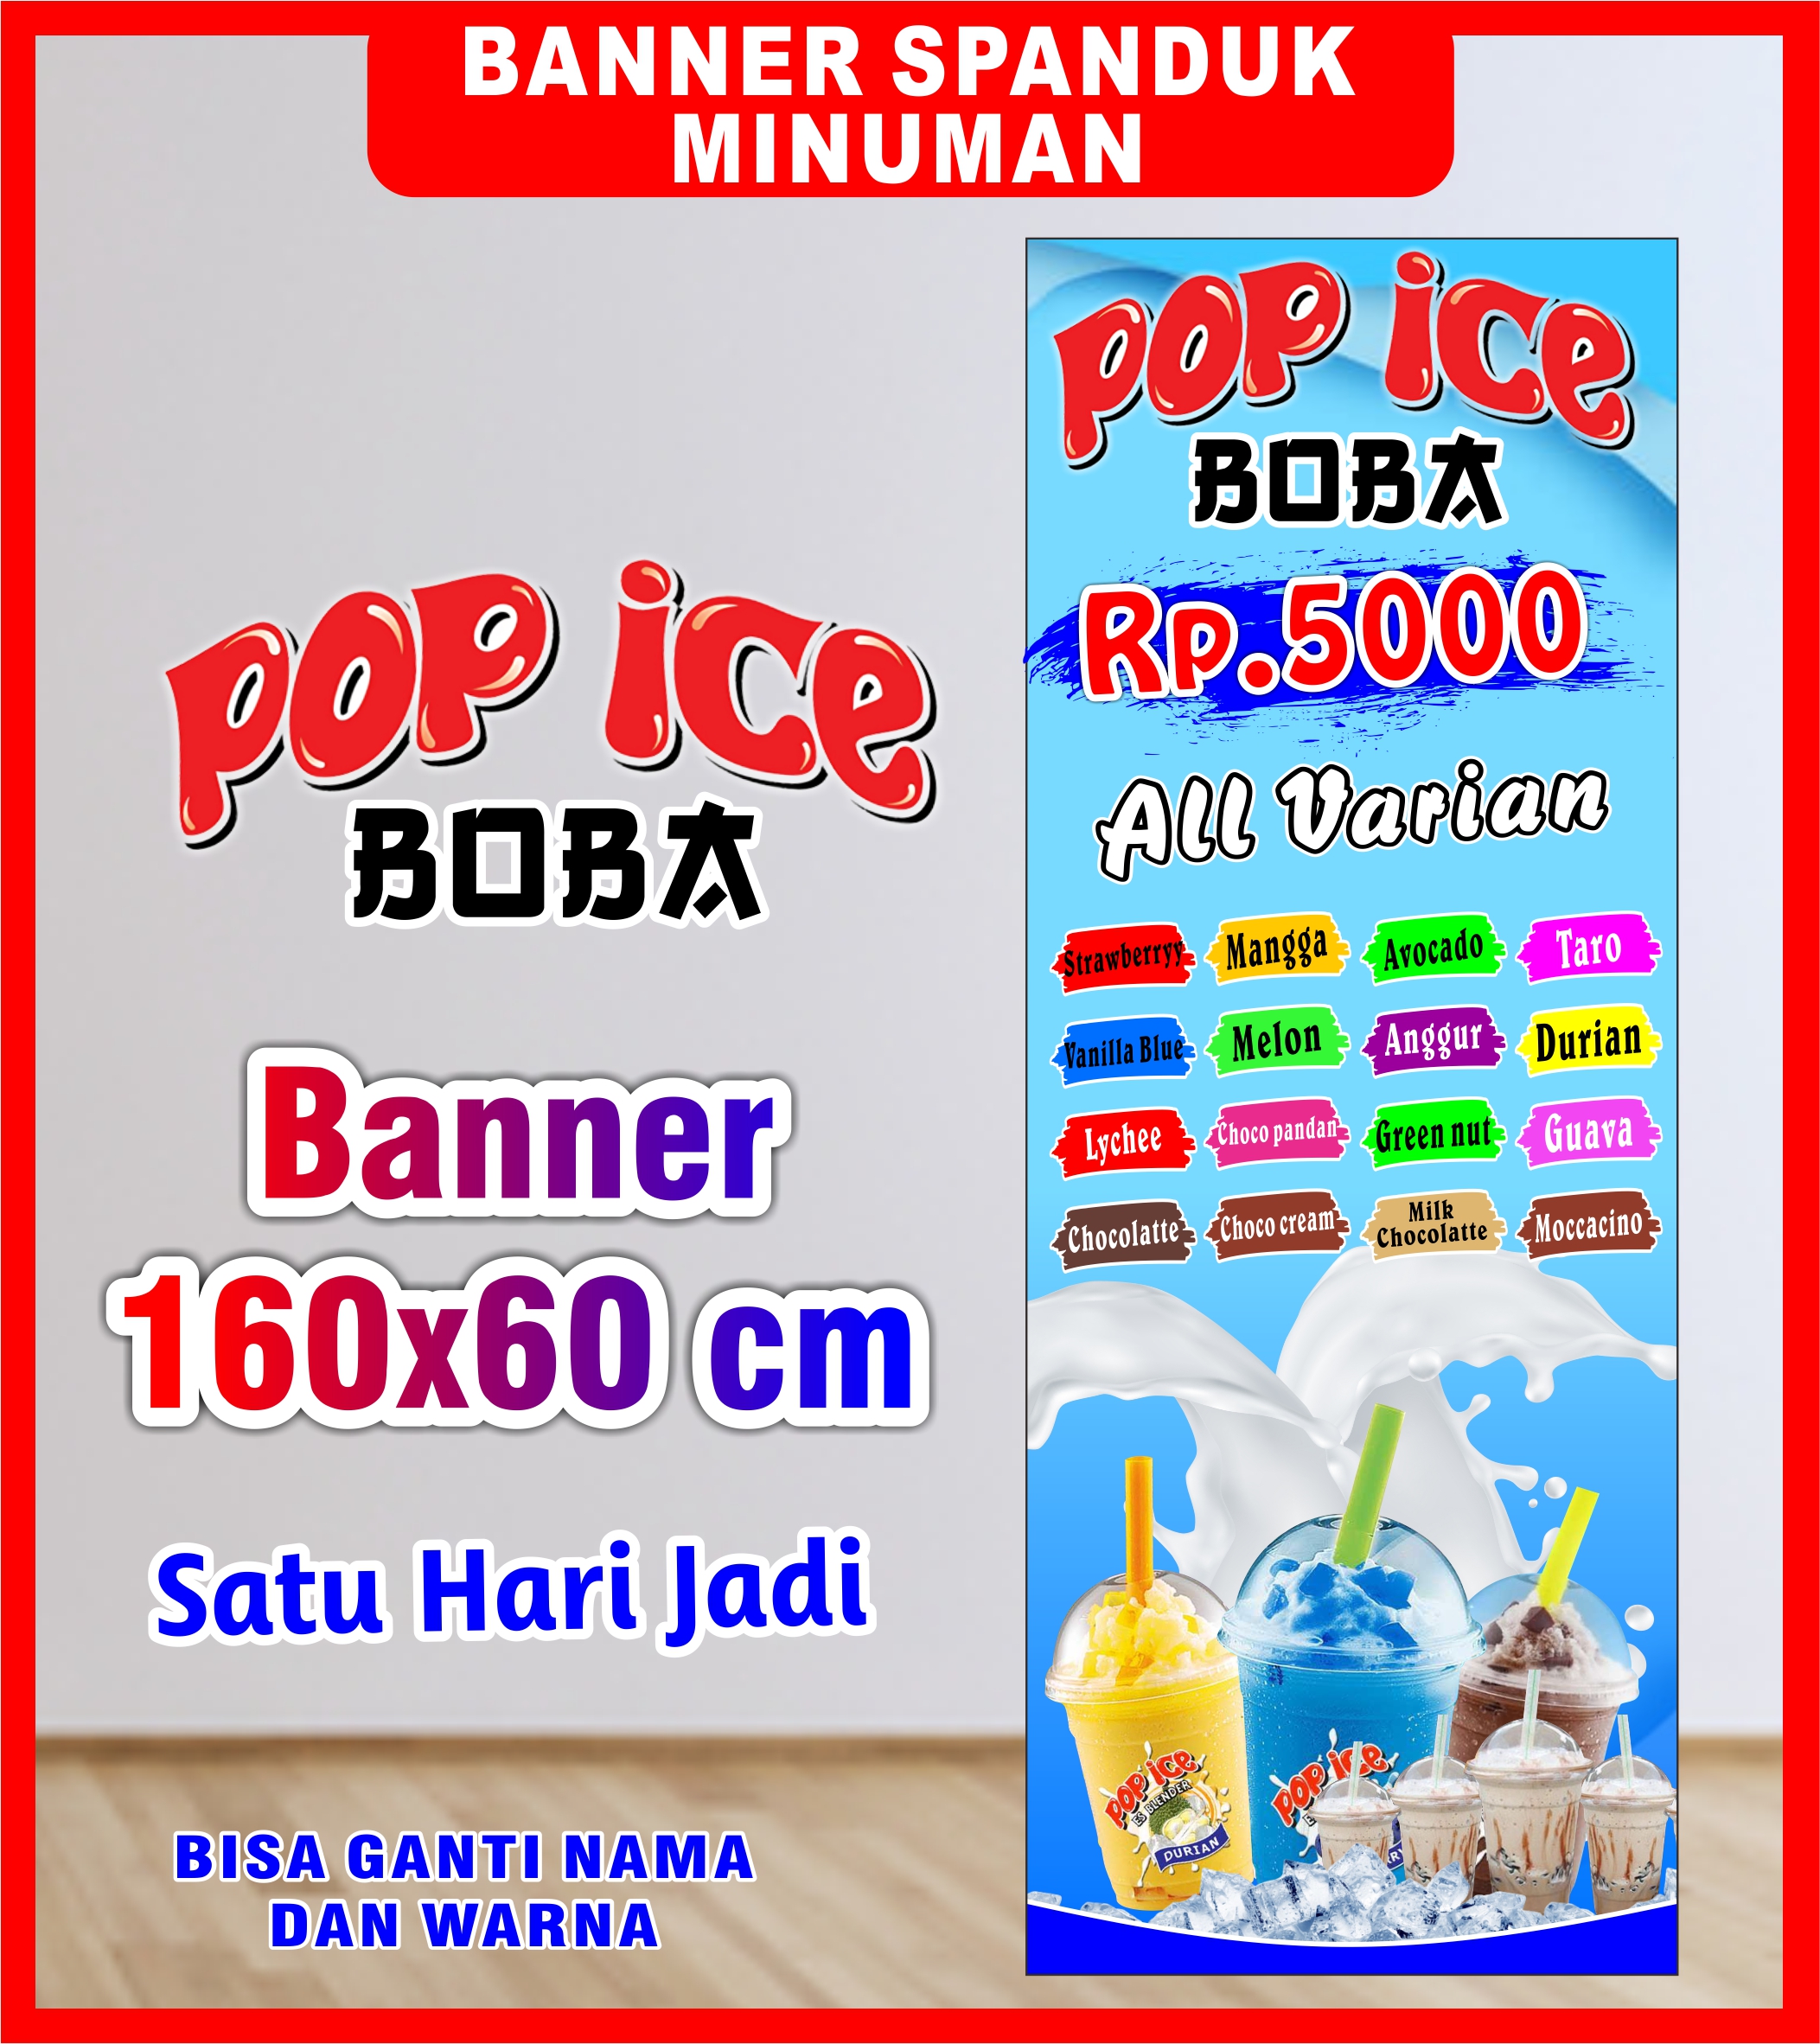 Spanduk Banner Backdrop Minuman Pop Ice Boba Cetak Spanduk Minuman Pop